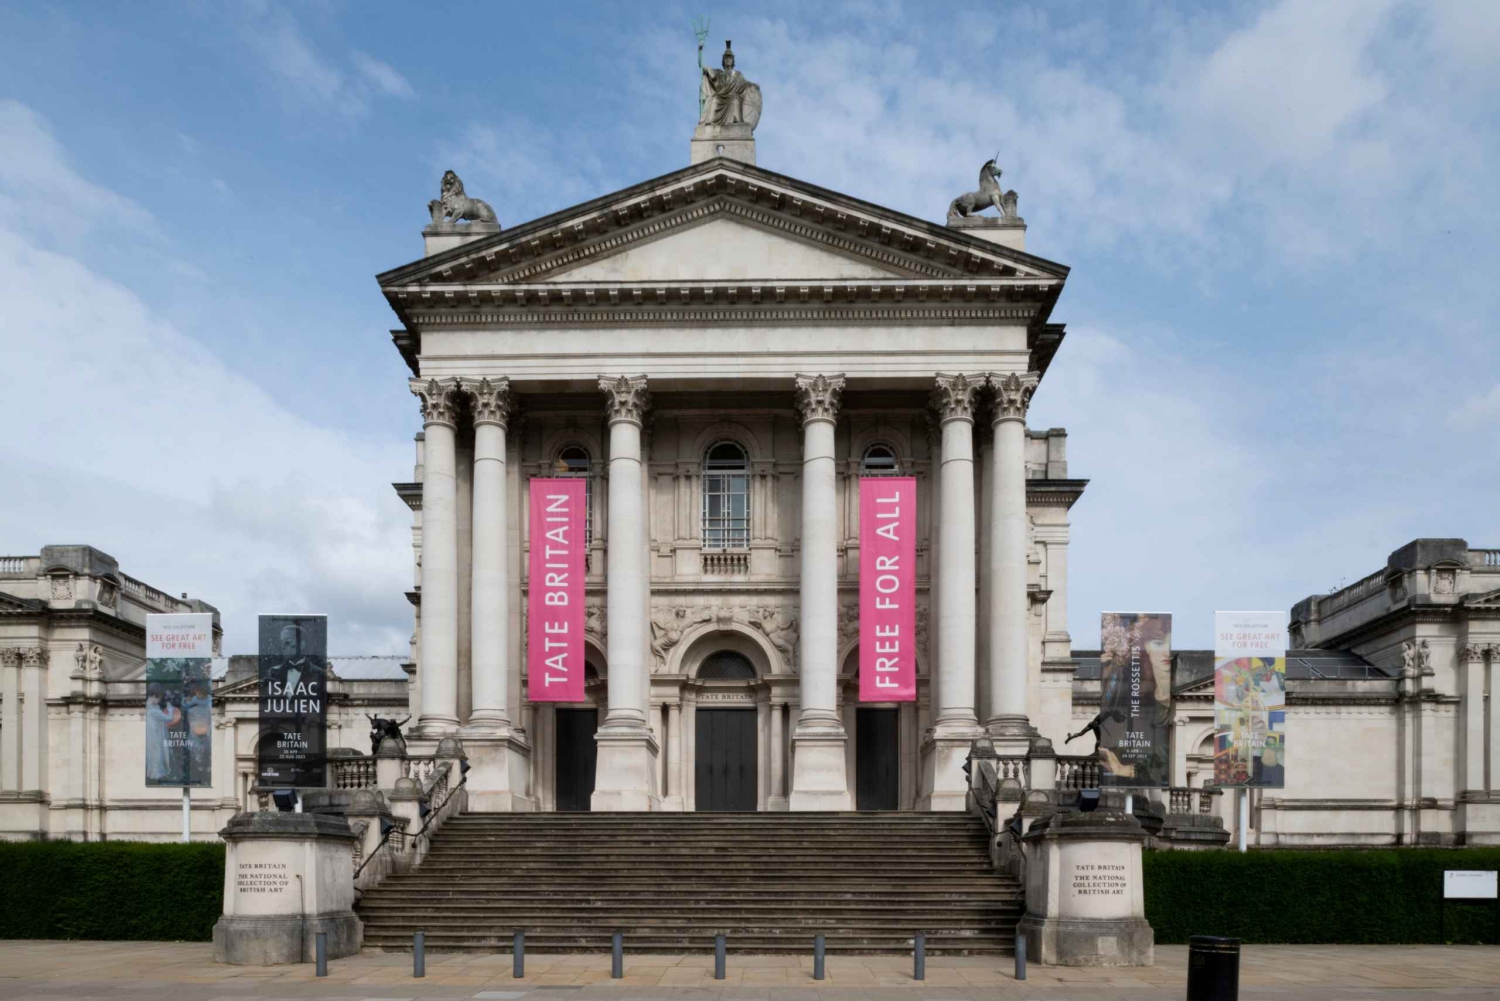 Lontoo: Tate Britainin virallinen tutustumiskierros